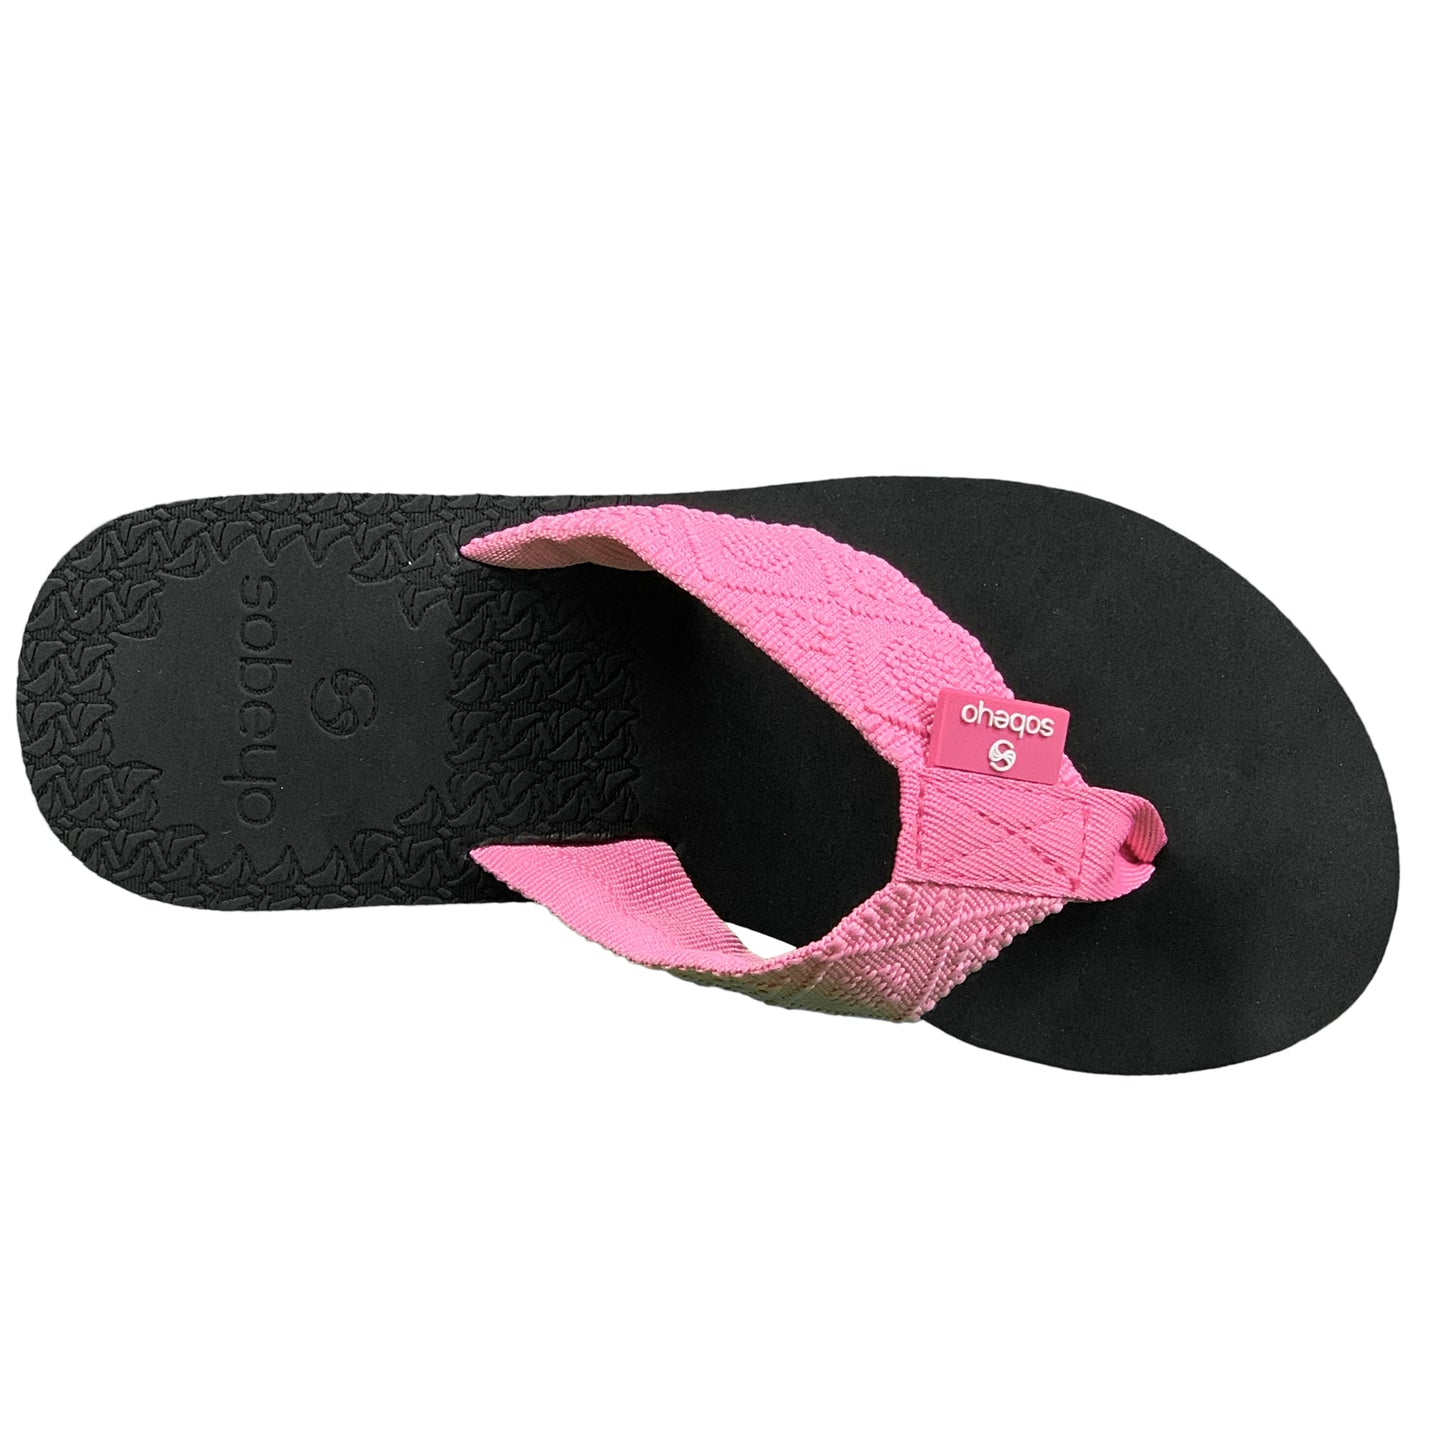 SOBEYO Women's Thong Platform Flip Flop EVA Soft Light-Weight Sandals